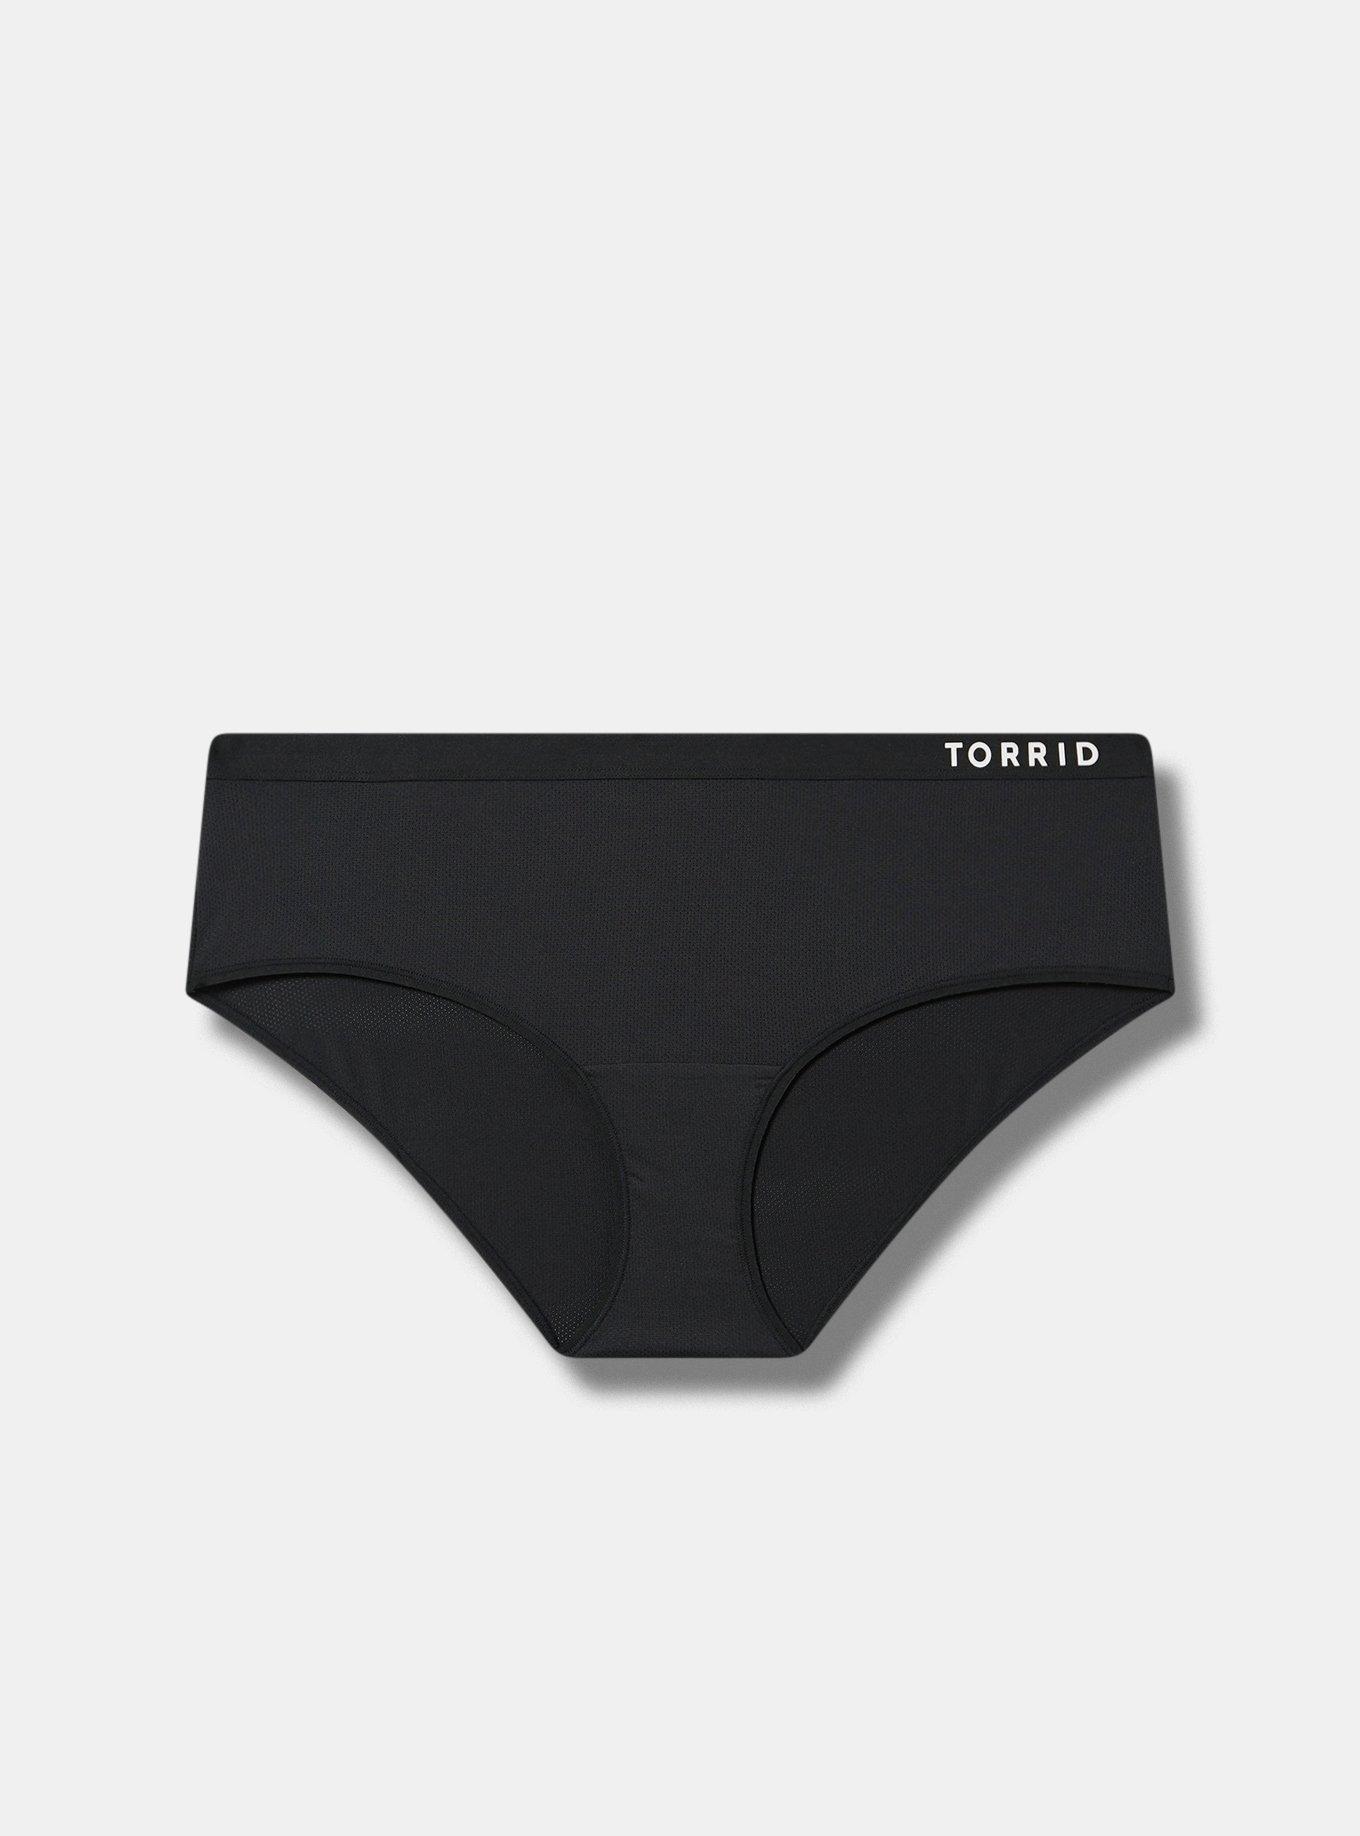 Torrid Logo Black Cotton Thong Panty - 11366874